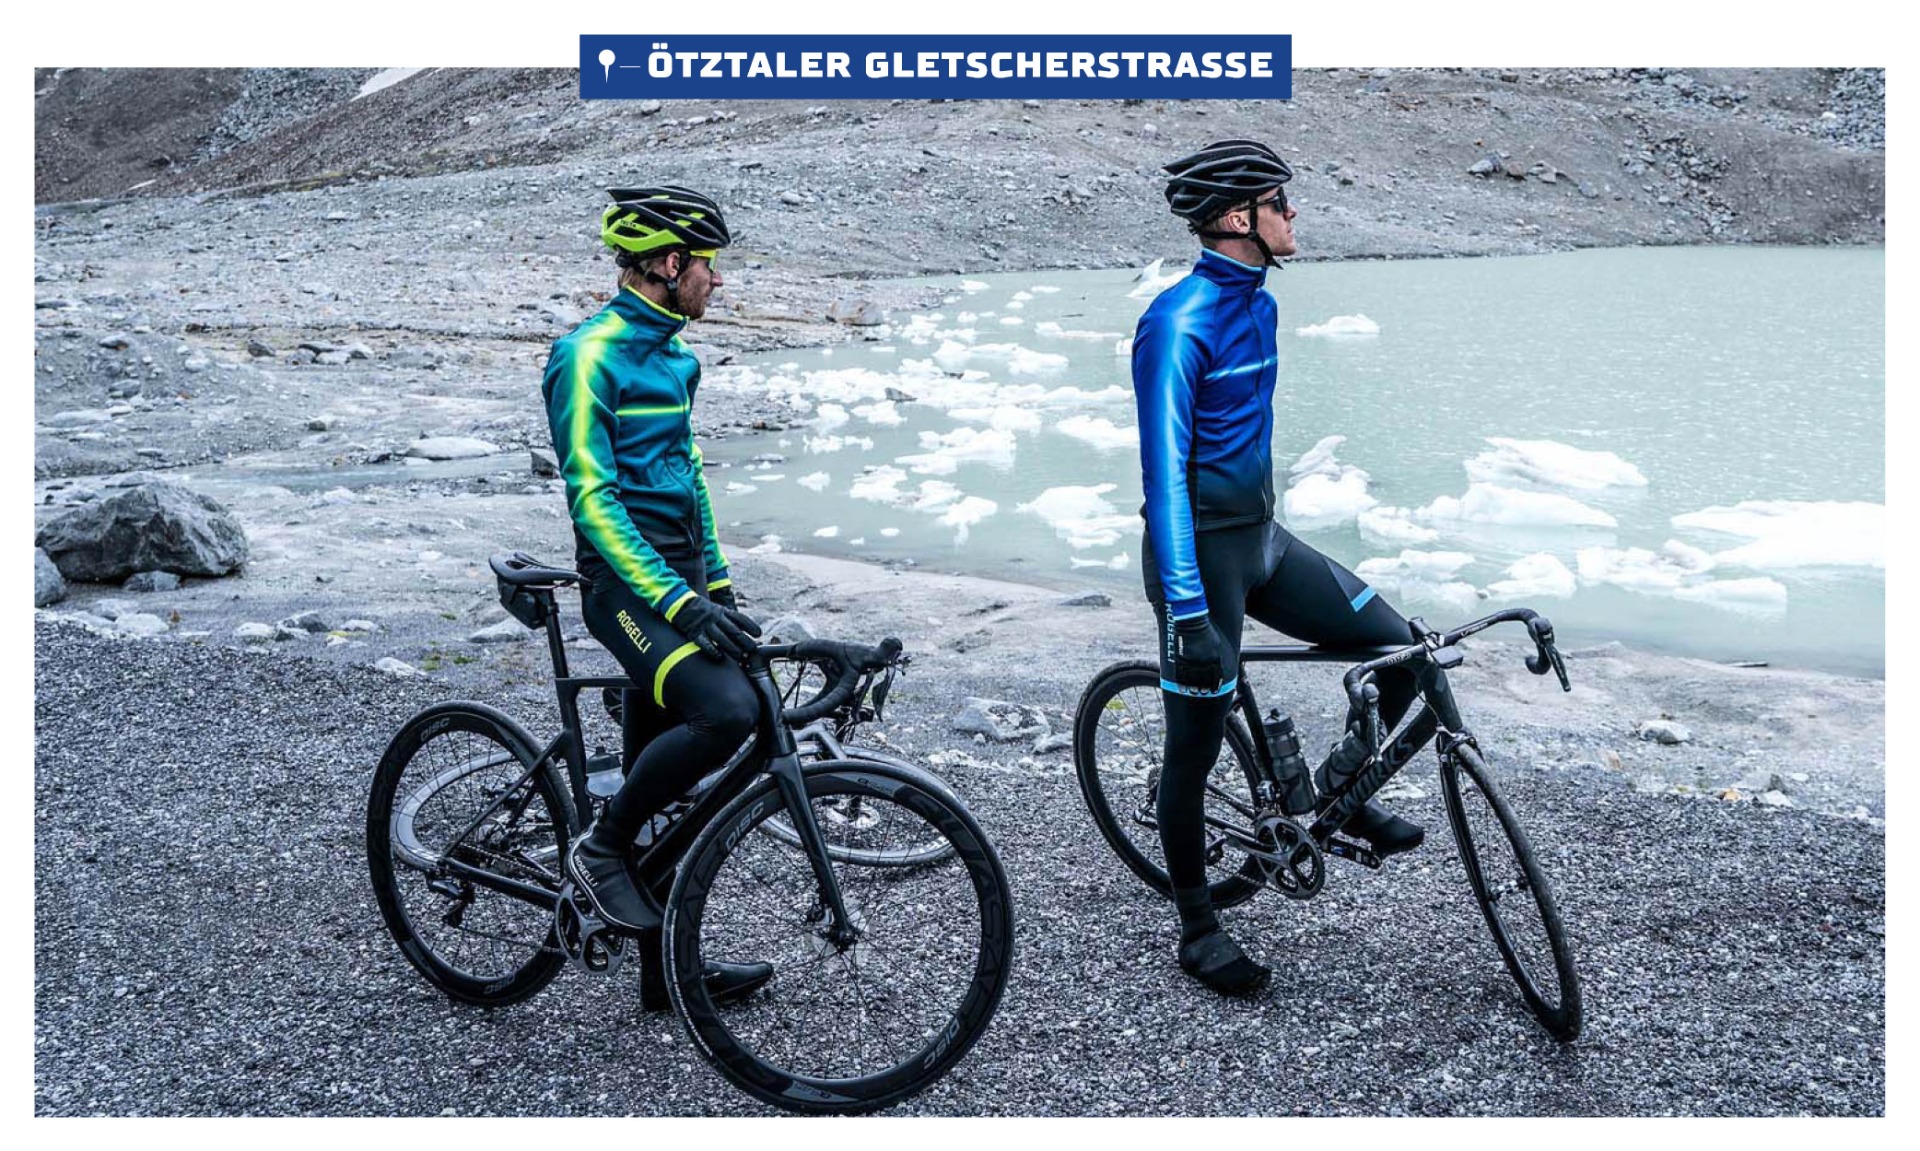 Twee mannen in fietskleding kijkend over het ijzige water